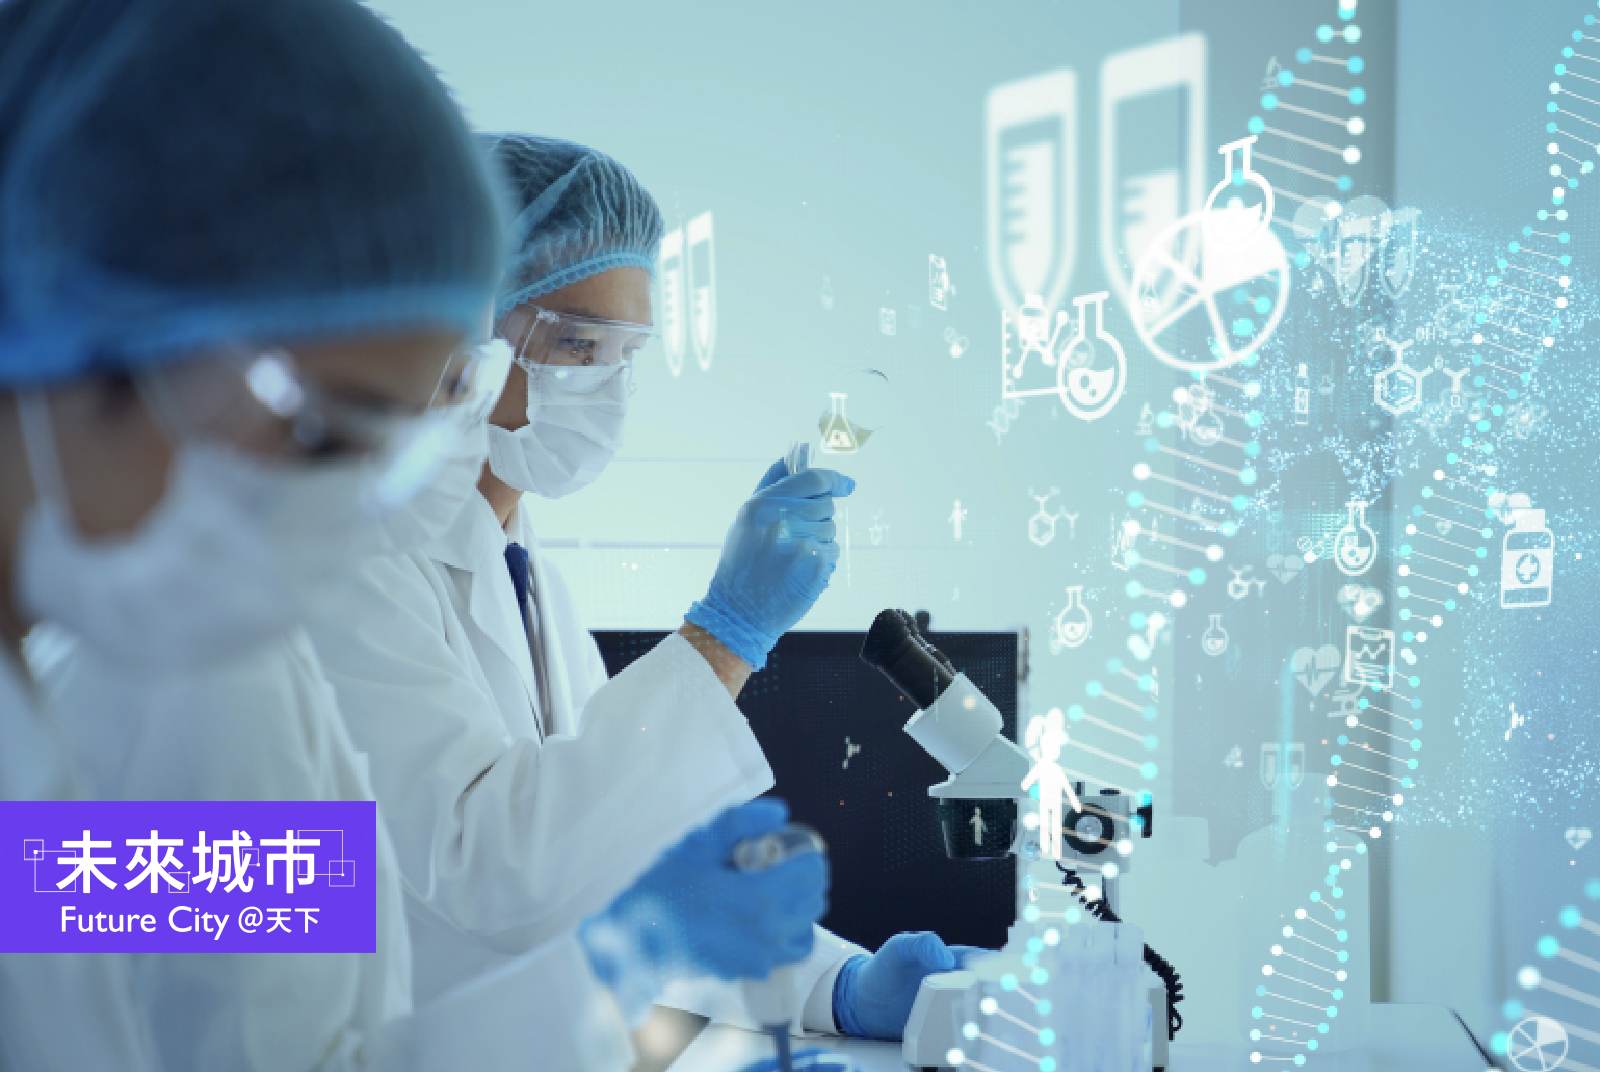 再生醫療科技可提供患者更多選項；然而，台灣的再生醫療管制仍受多方爭議。